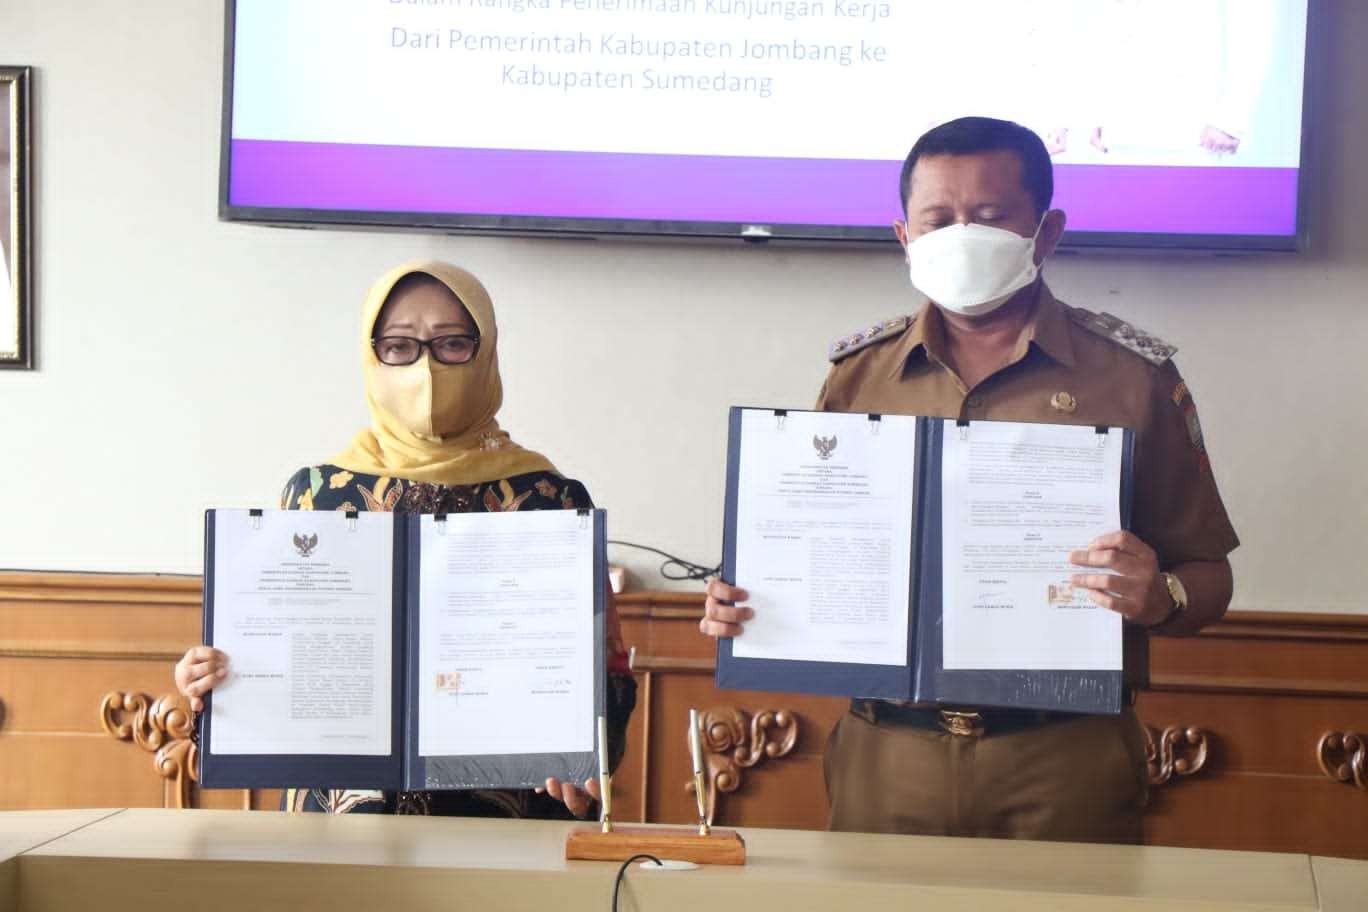 MoU antara Pemerintah Kabupaten Sumedang dengan Pemerintah Kabupaten Jombang terkait Hibah Aplikasi E-Office dan E-Office Desa. (Foto: Istimewa)